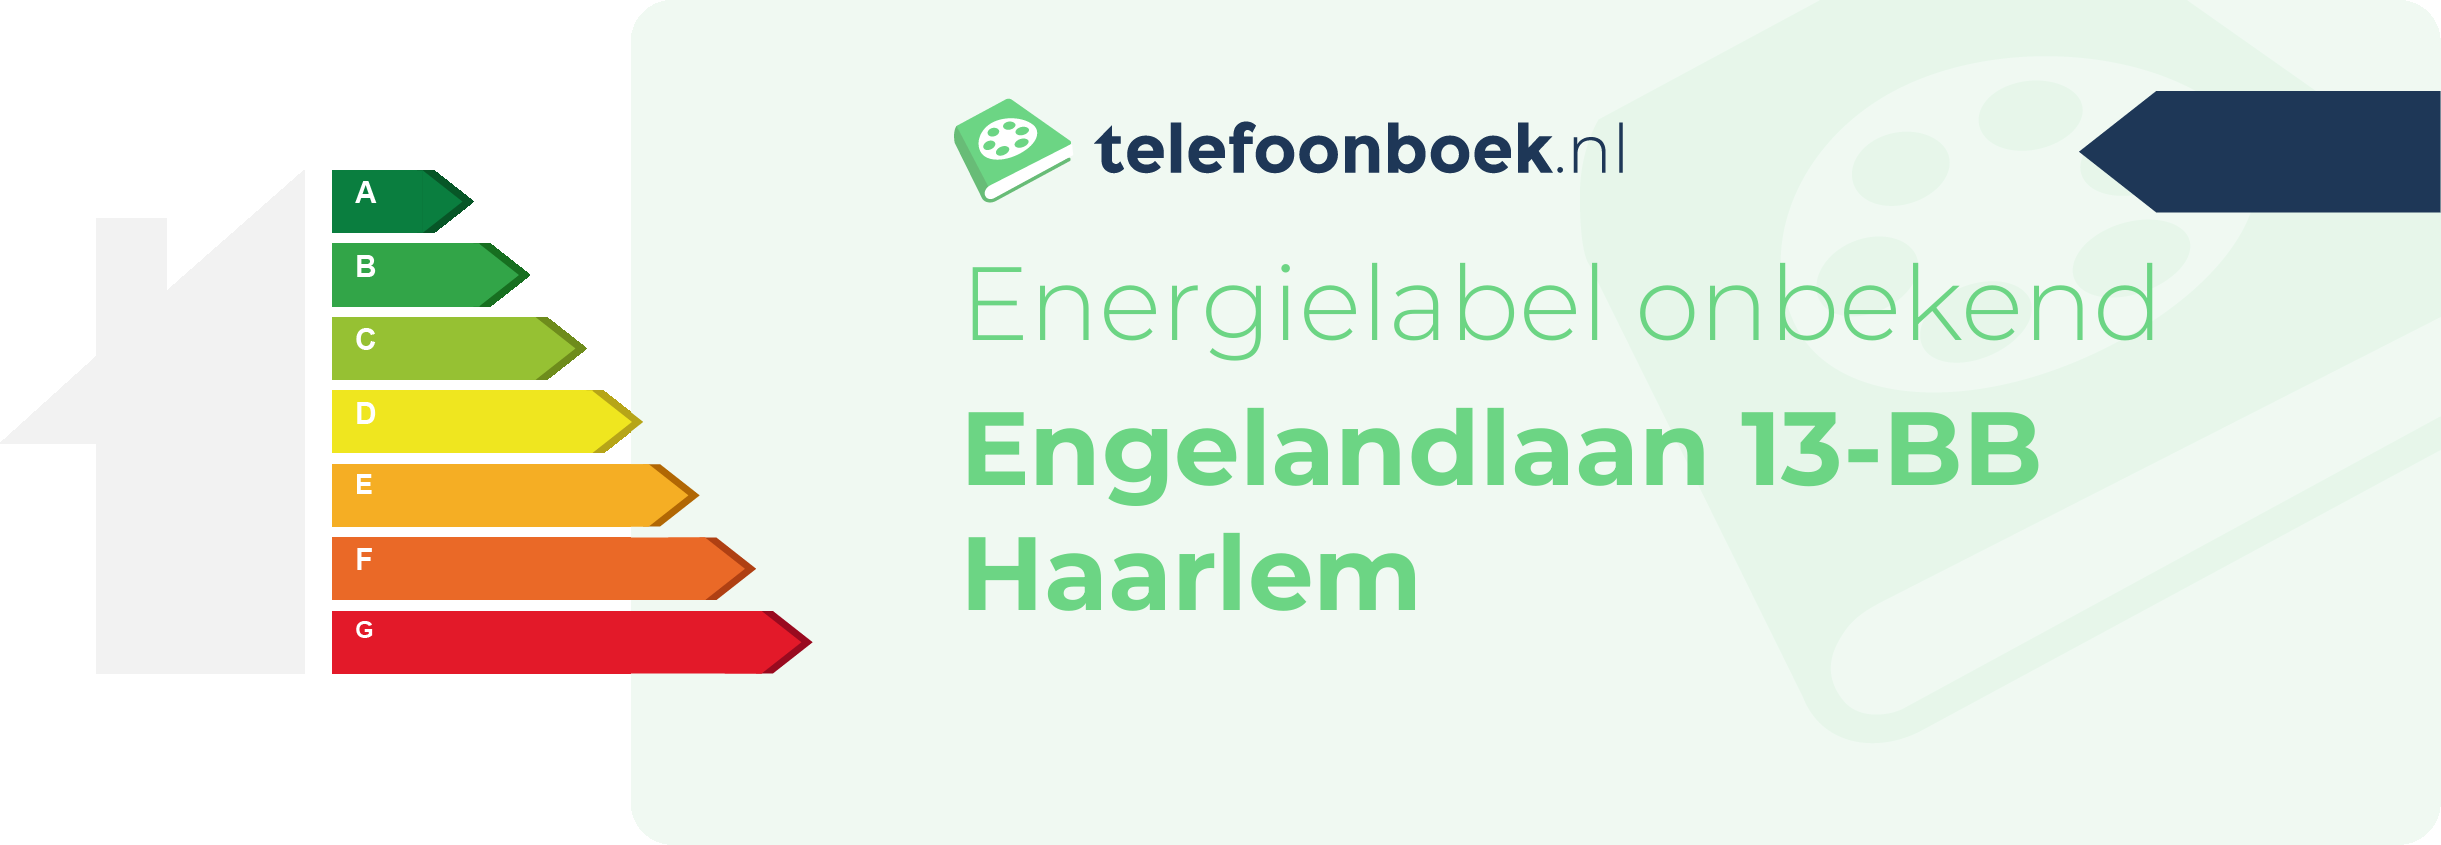 Energielabel Engelandlaan 13-BB Haarlem